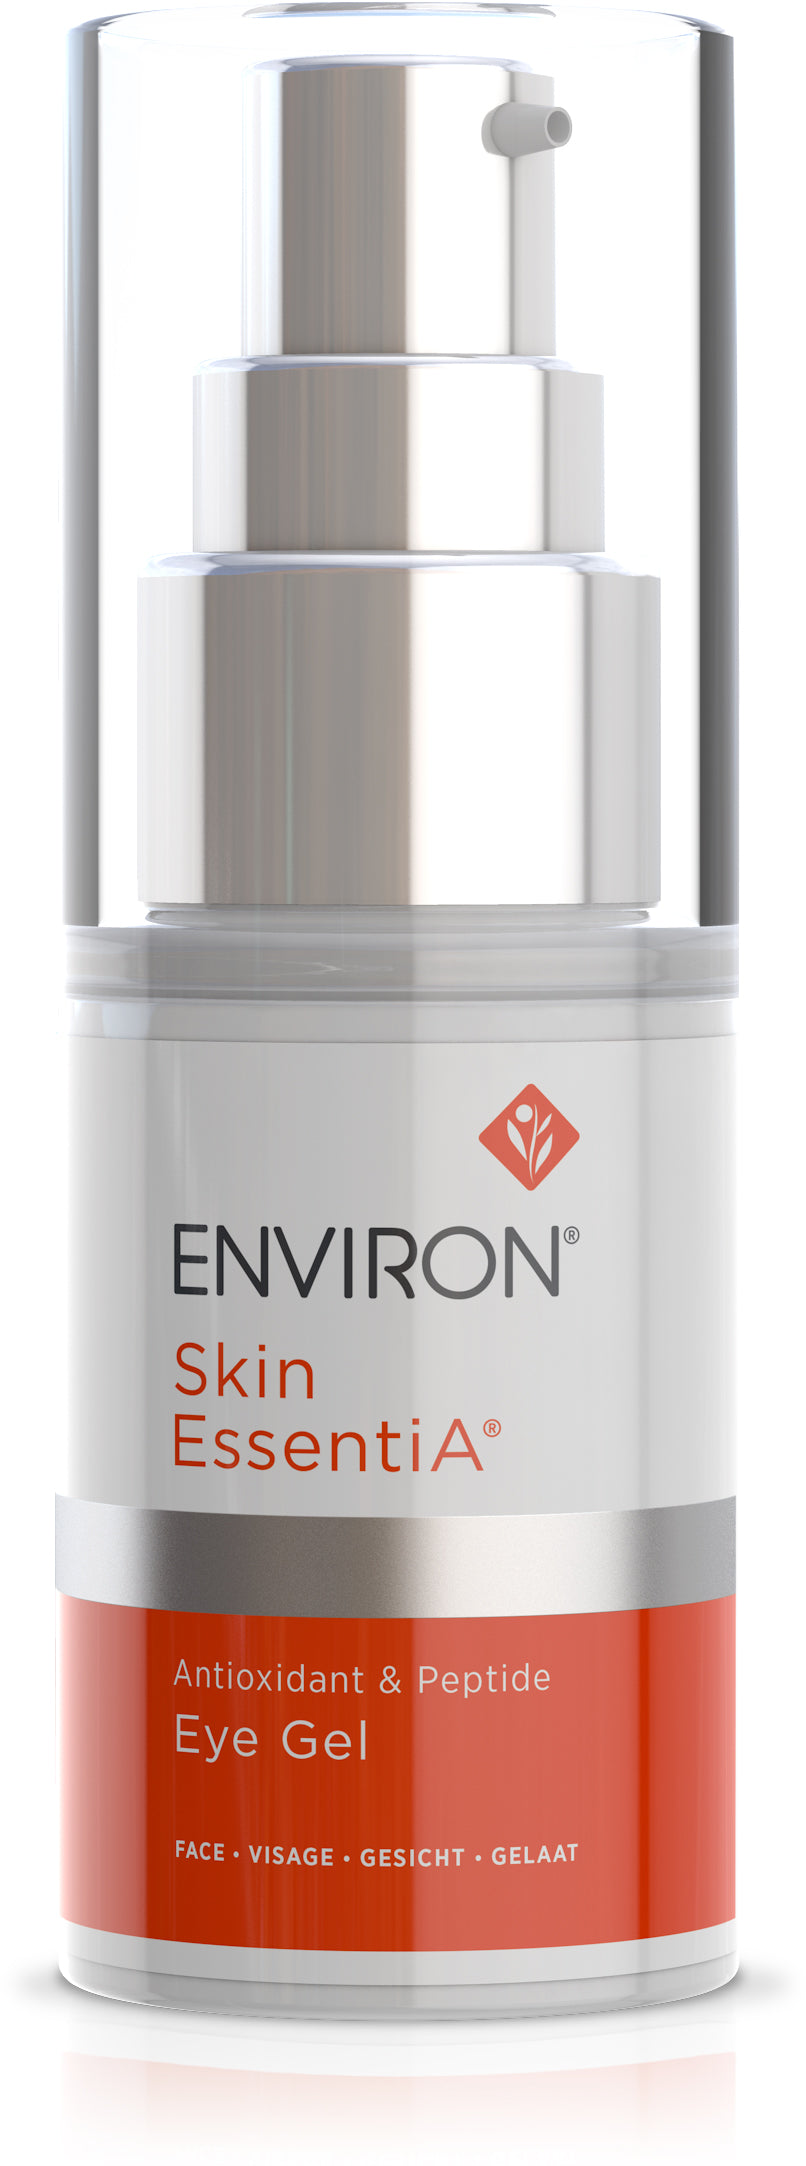 Skin EssentiA | Antioxidant & Peptide | Eye Gel